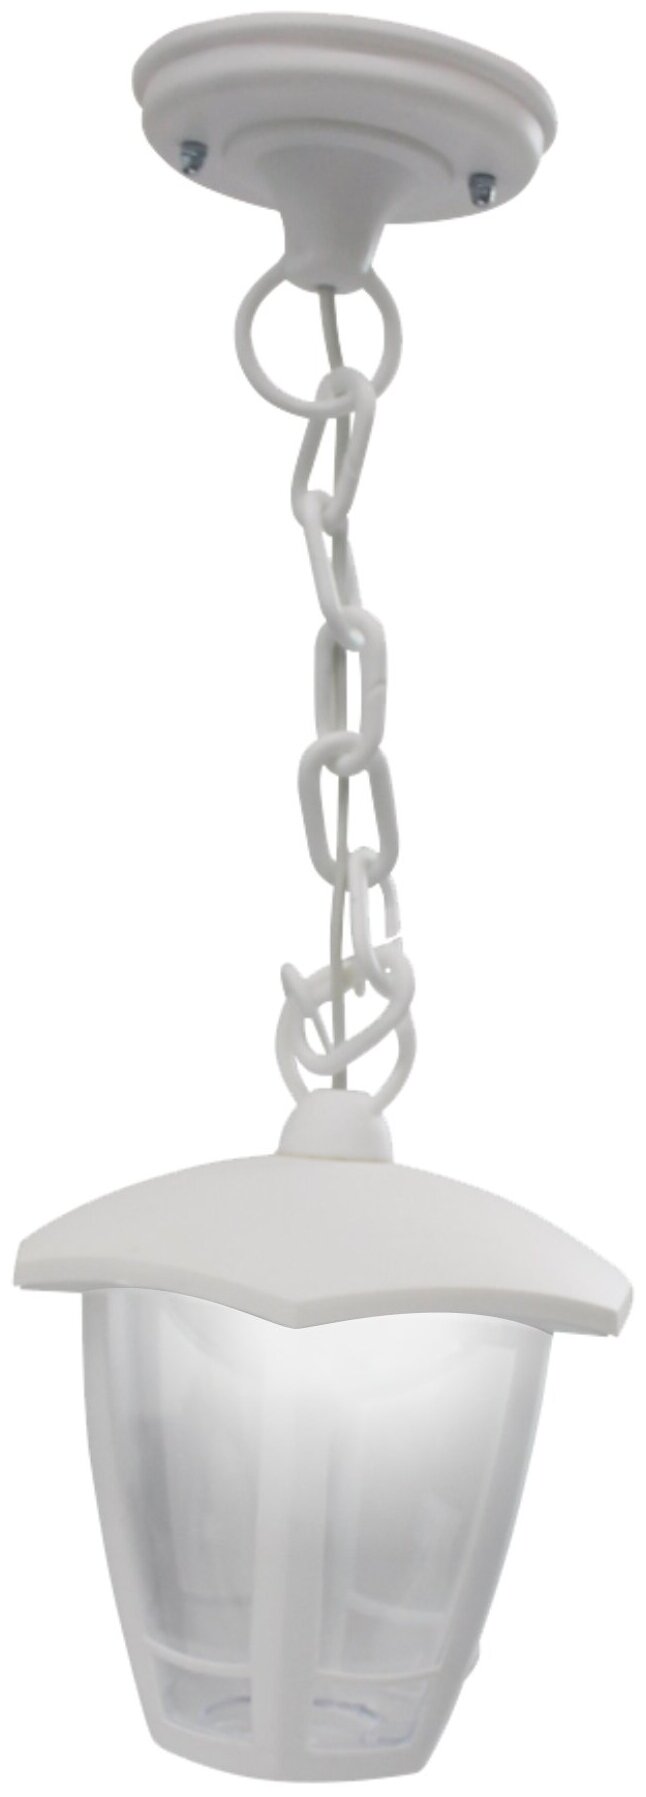 Декоративный садово-парковый светодиодный светильник Марсель 1, Подвесное уличное Led освещение ДСУ 07-8-002 У1, IP44, 8Вт/ 720Лм, 6500К, 220В